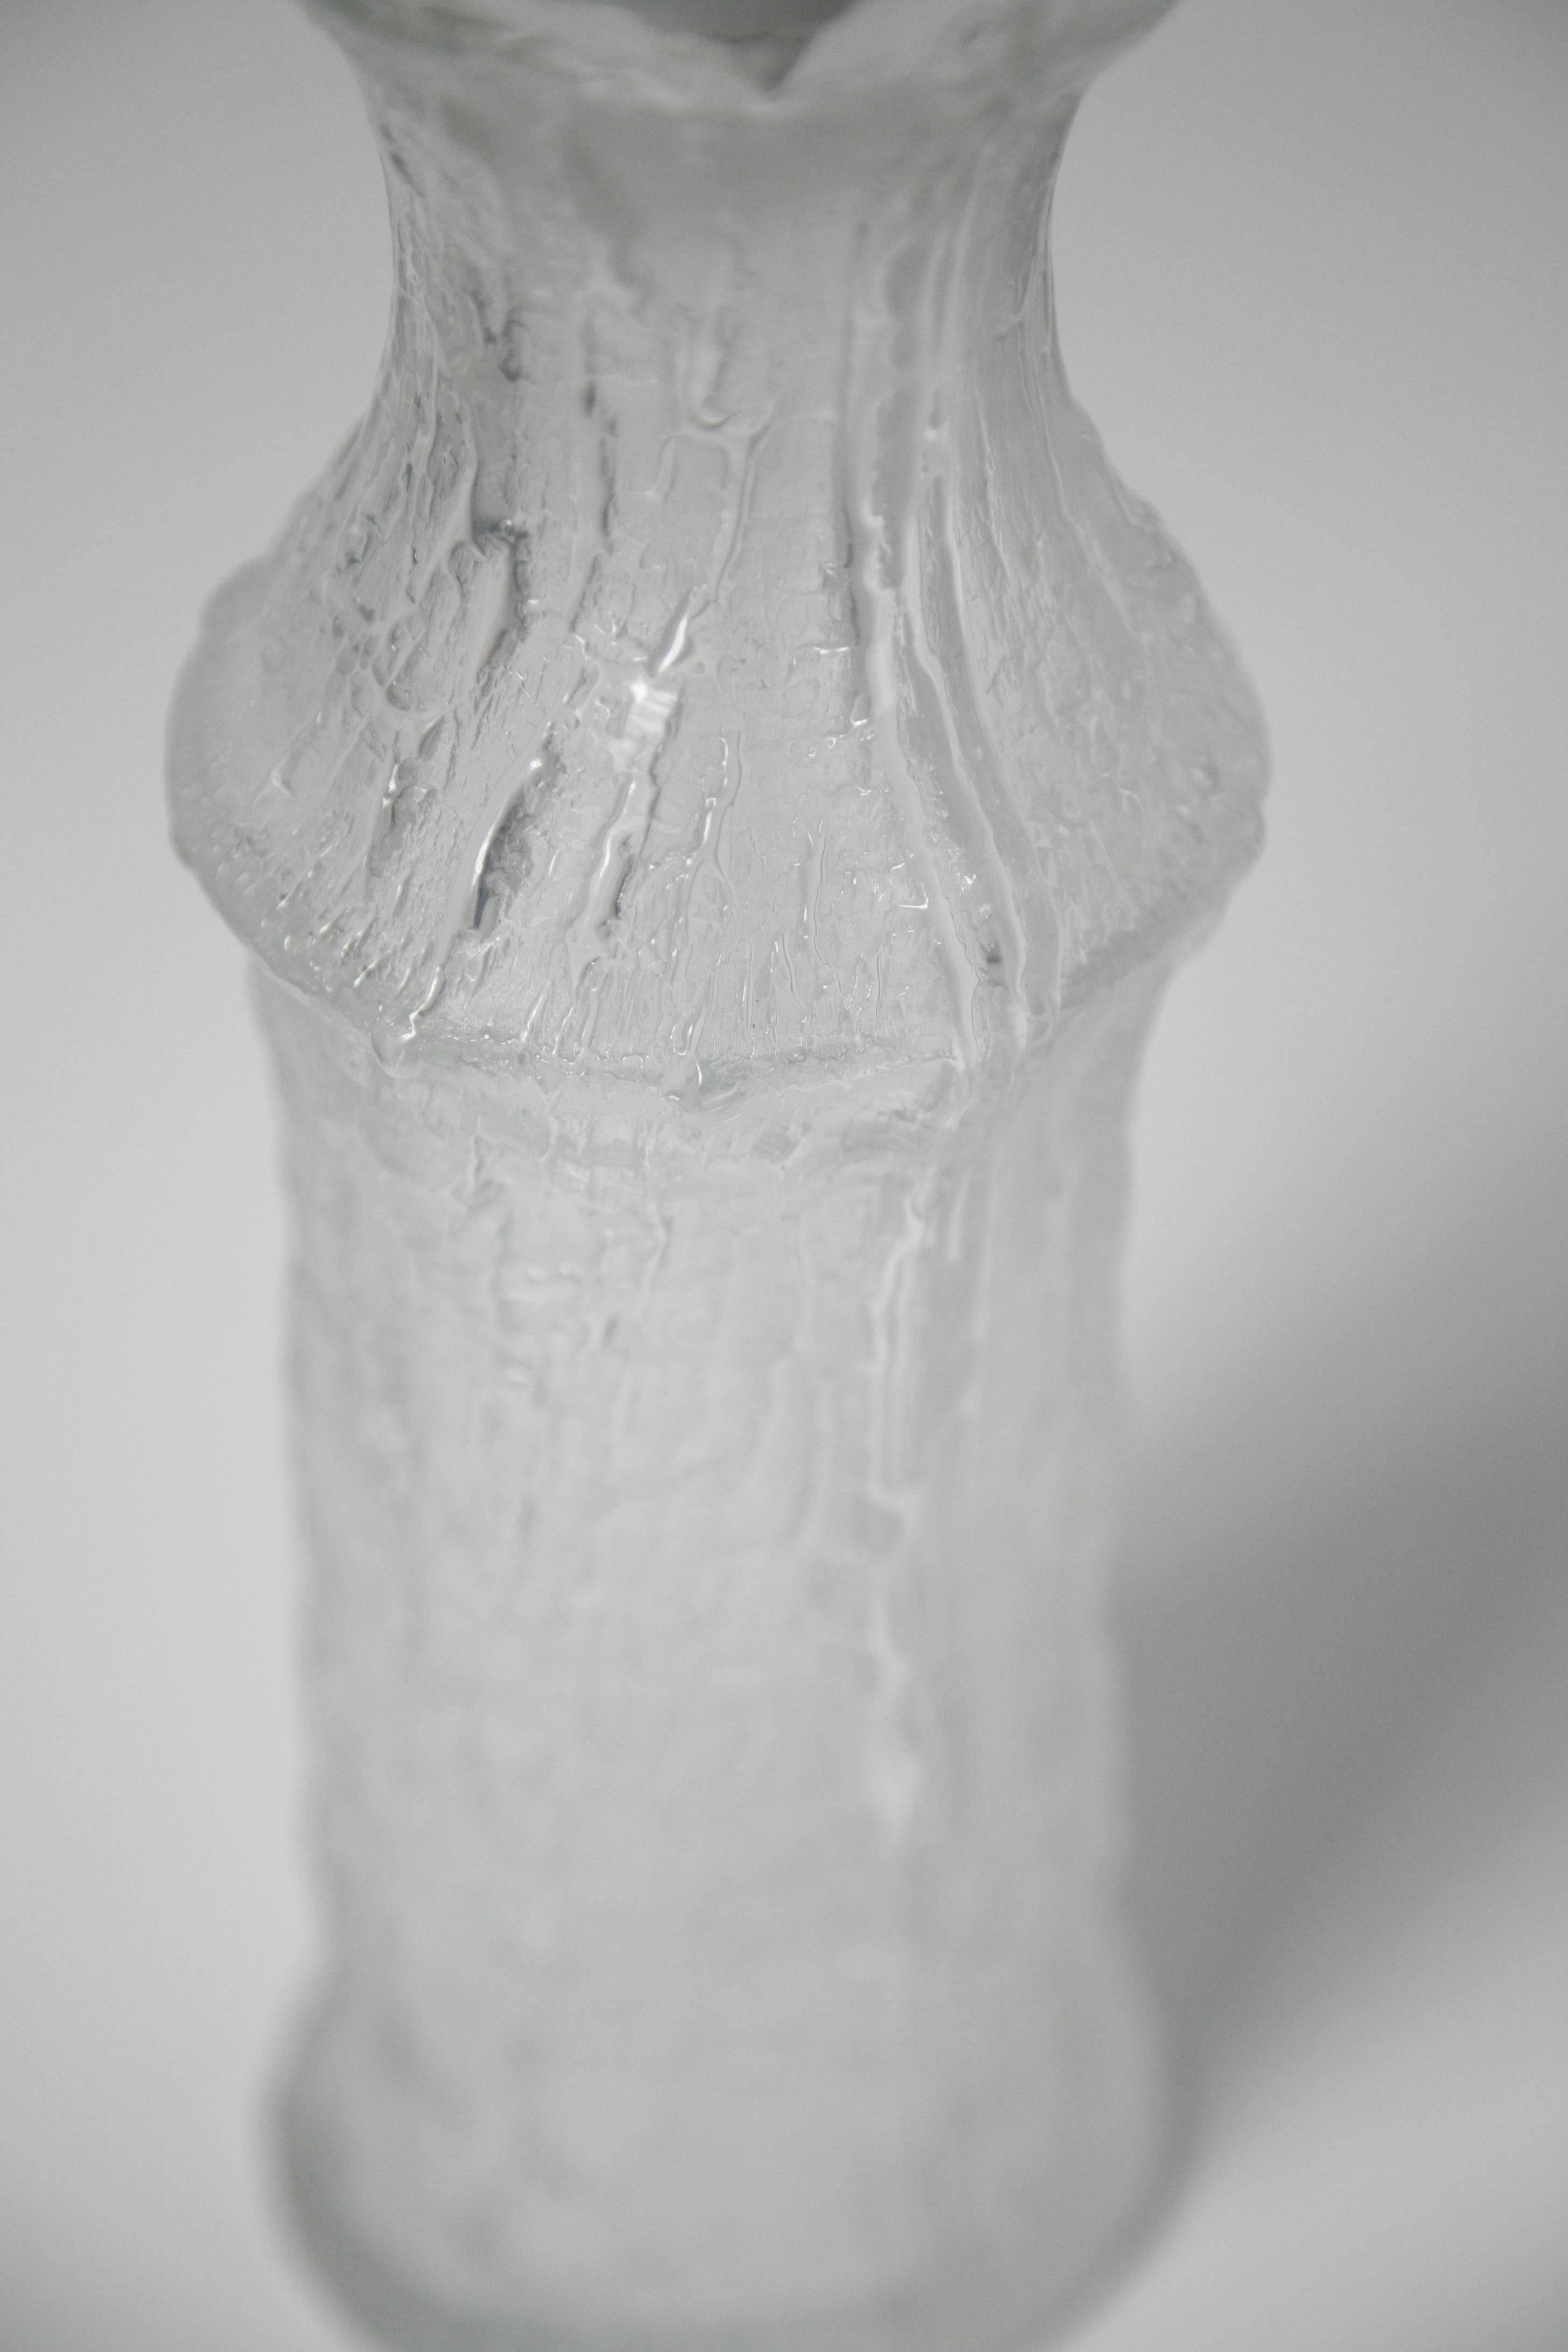 Paire de lampes Timo Sarpaneva en verre clair avec une texture d'écorce d'arbre, pour la société finlandaise Iittala vendue par Luxus Suède, conçues dans les années 1960, verre clair avec une texture semblable à l'écorce d'un arbre, aspect mat,